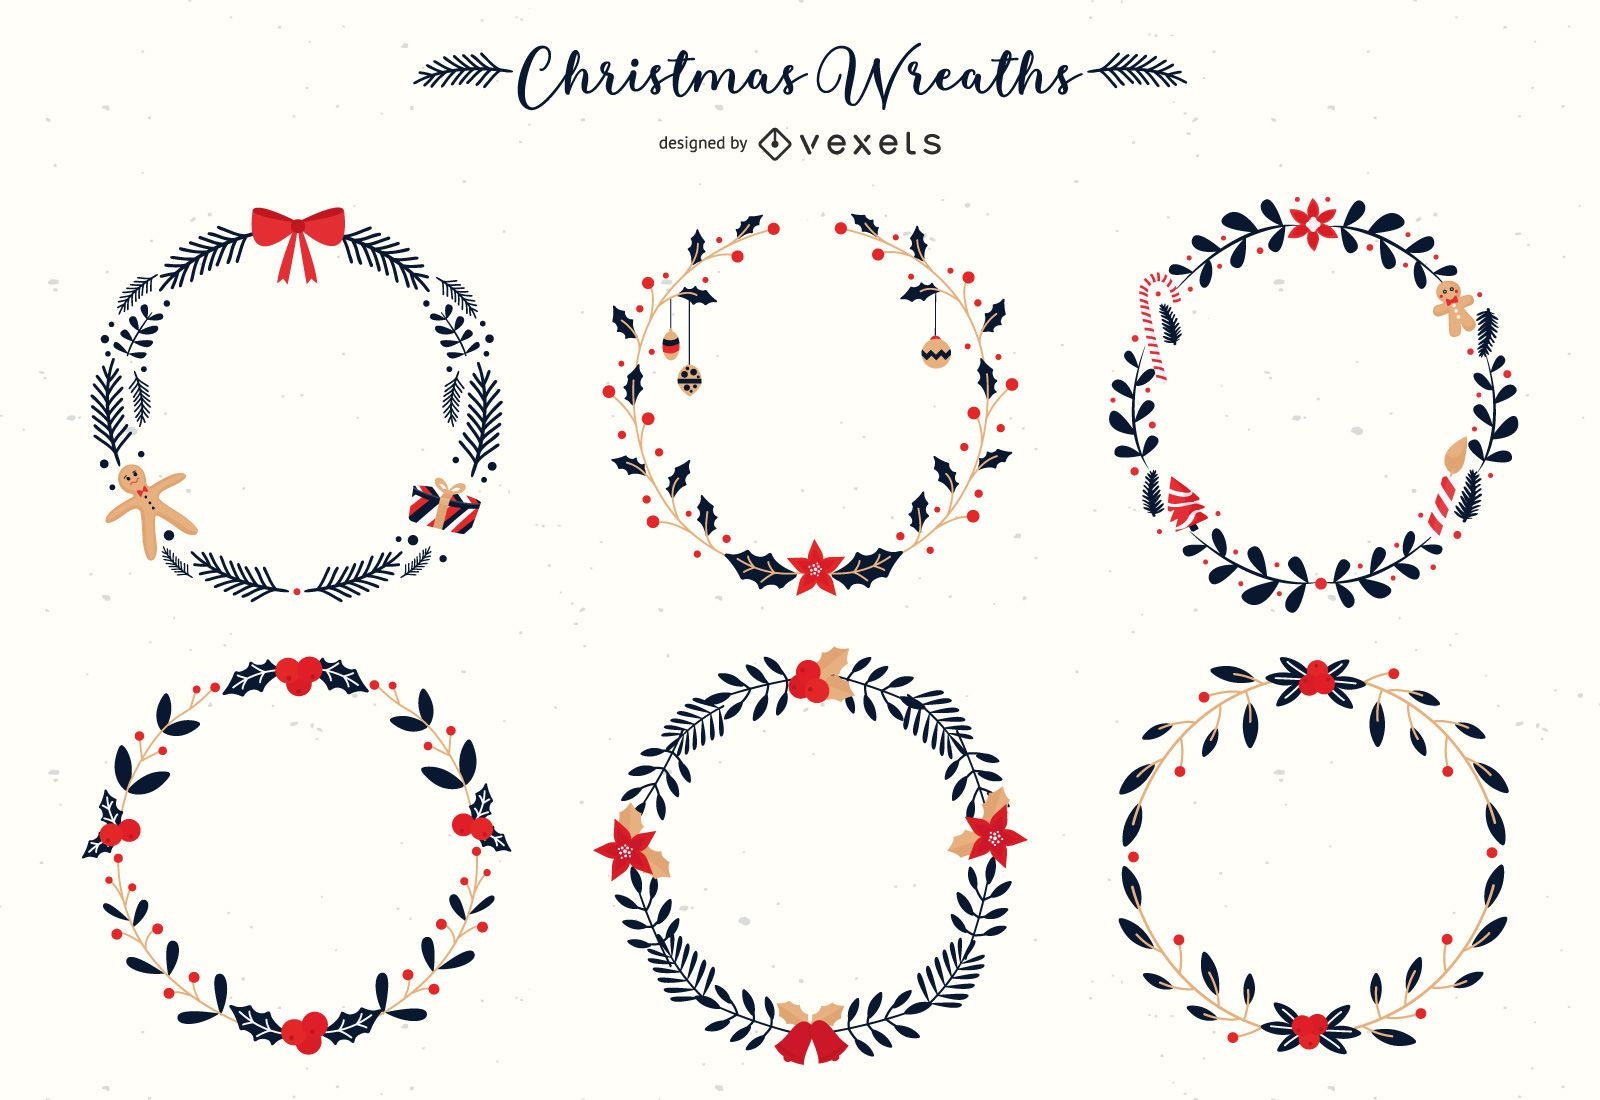 Christmas wreaths vector set